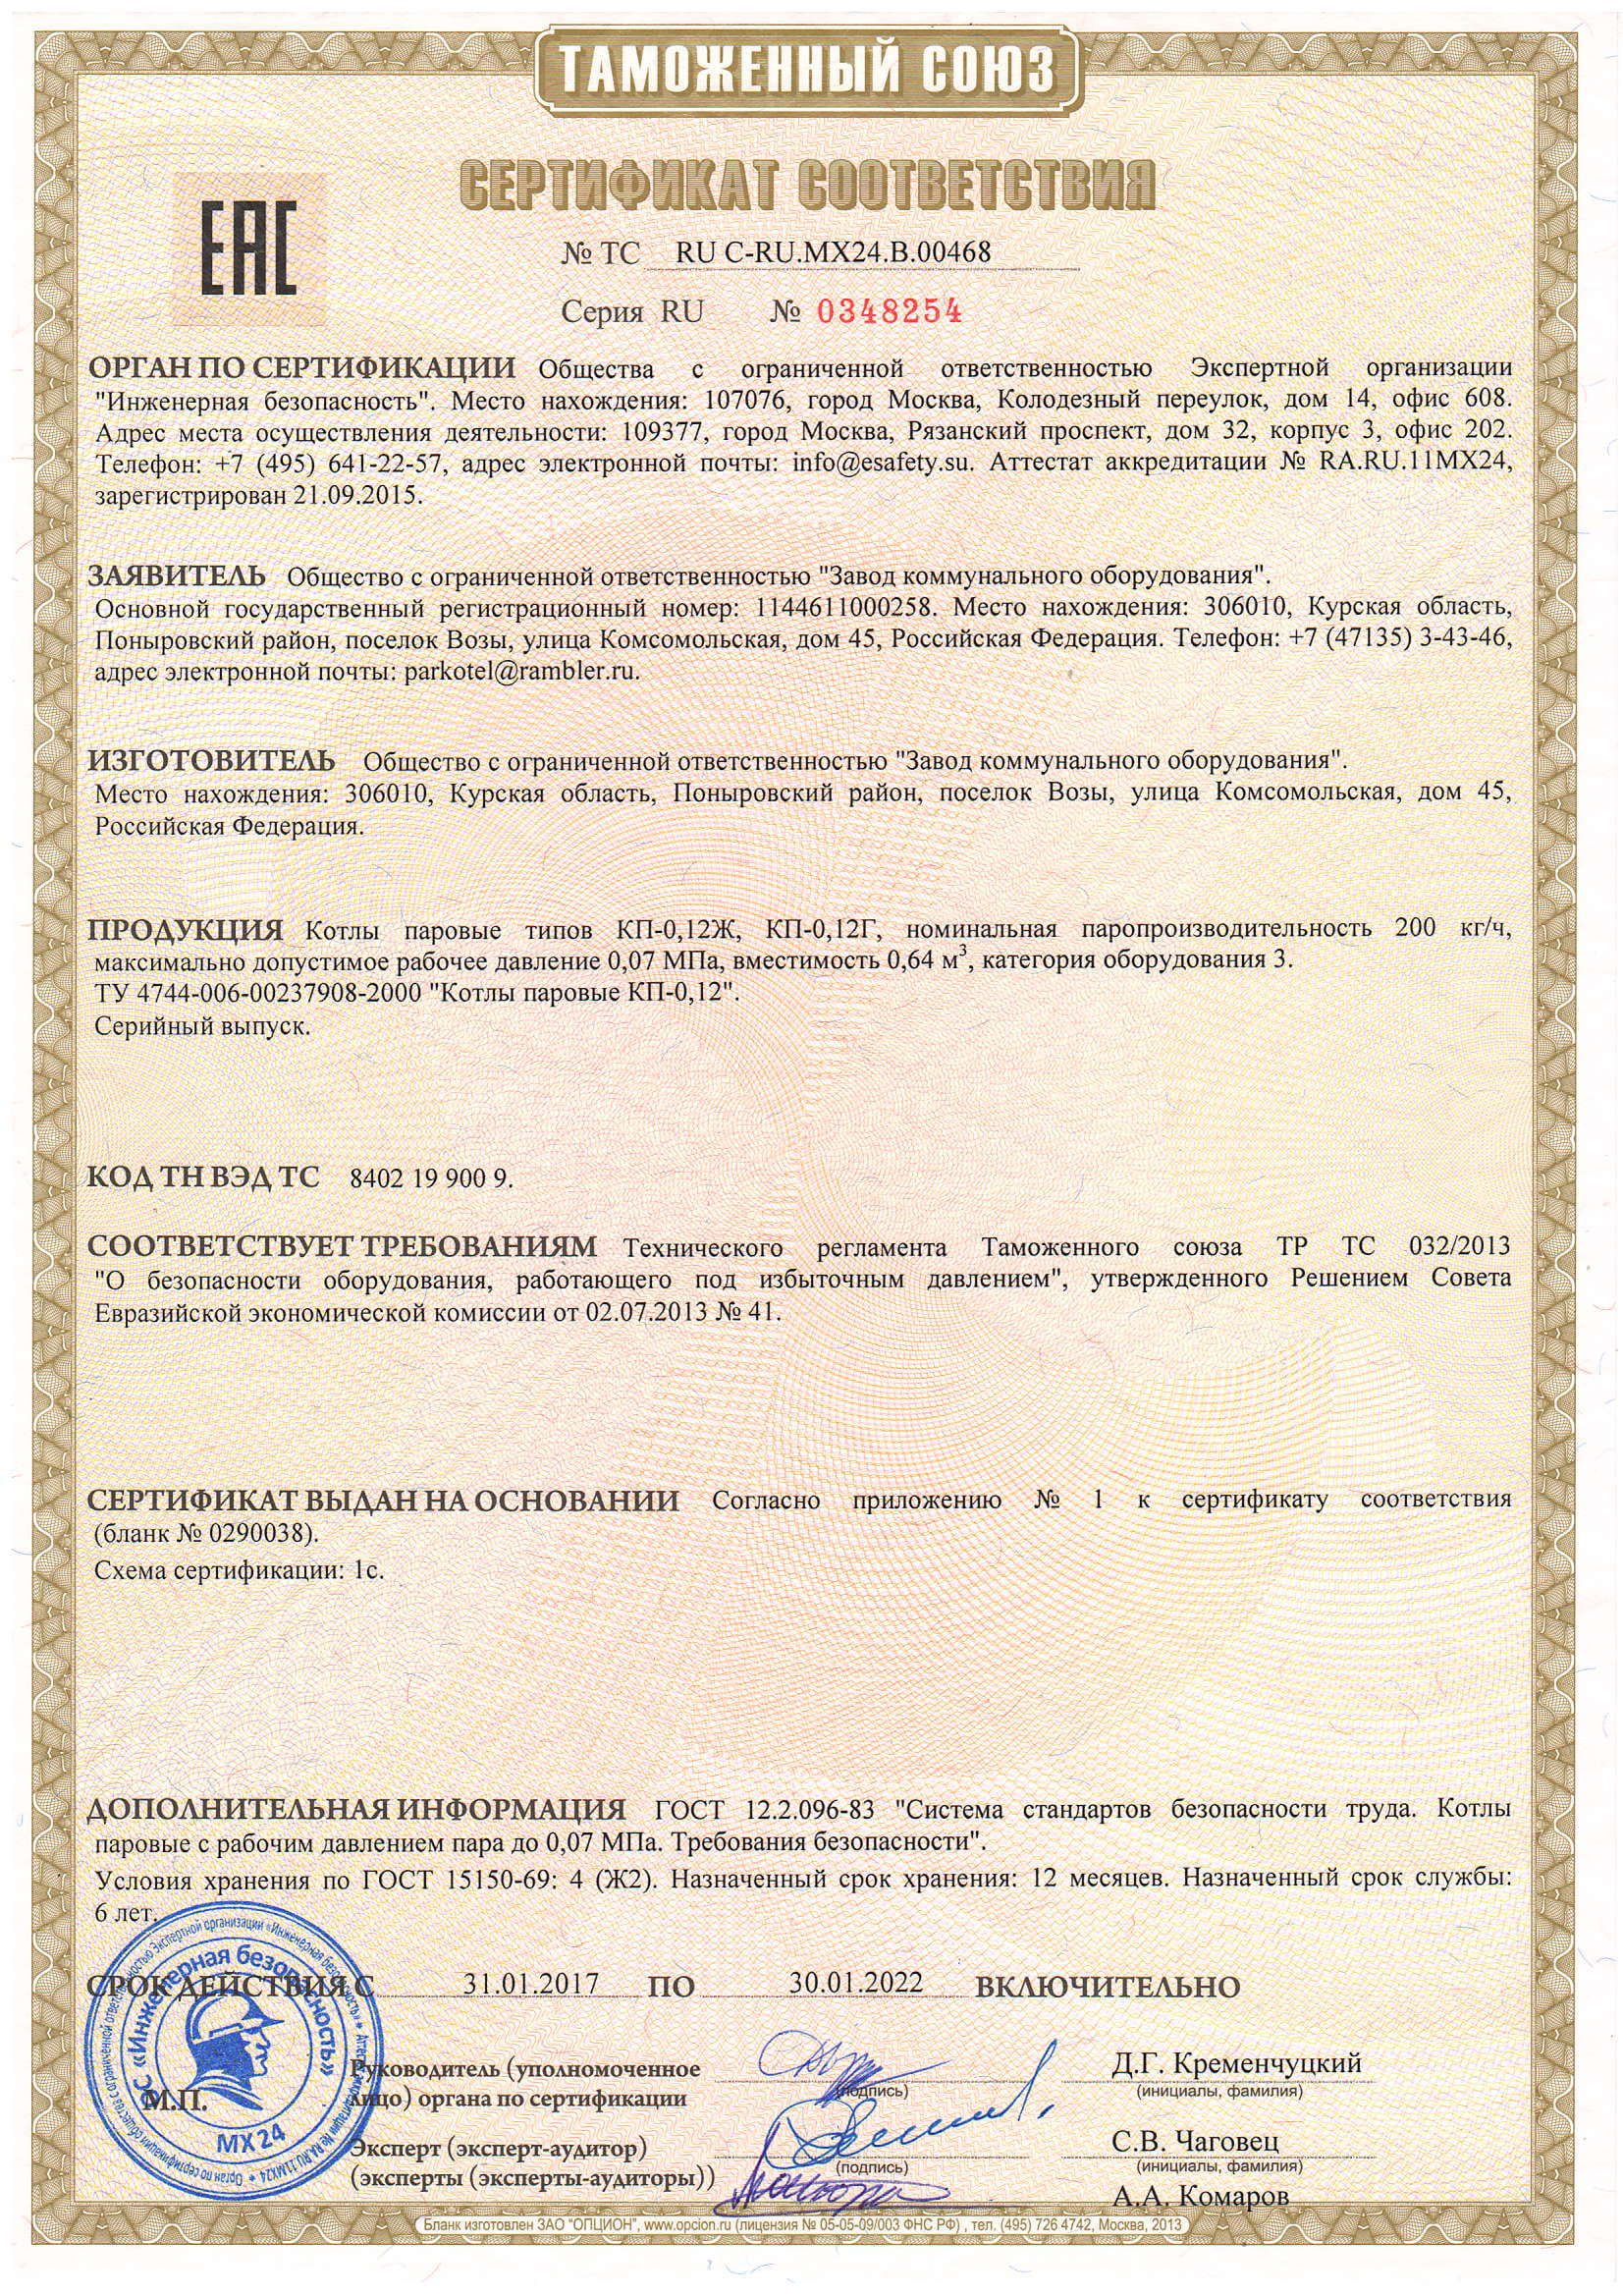 Сертификат о соответствии.  Оборудование - паровые котлы типов КП.